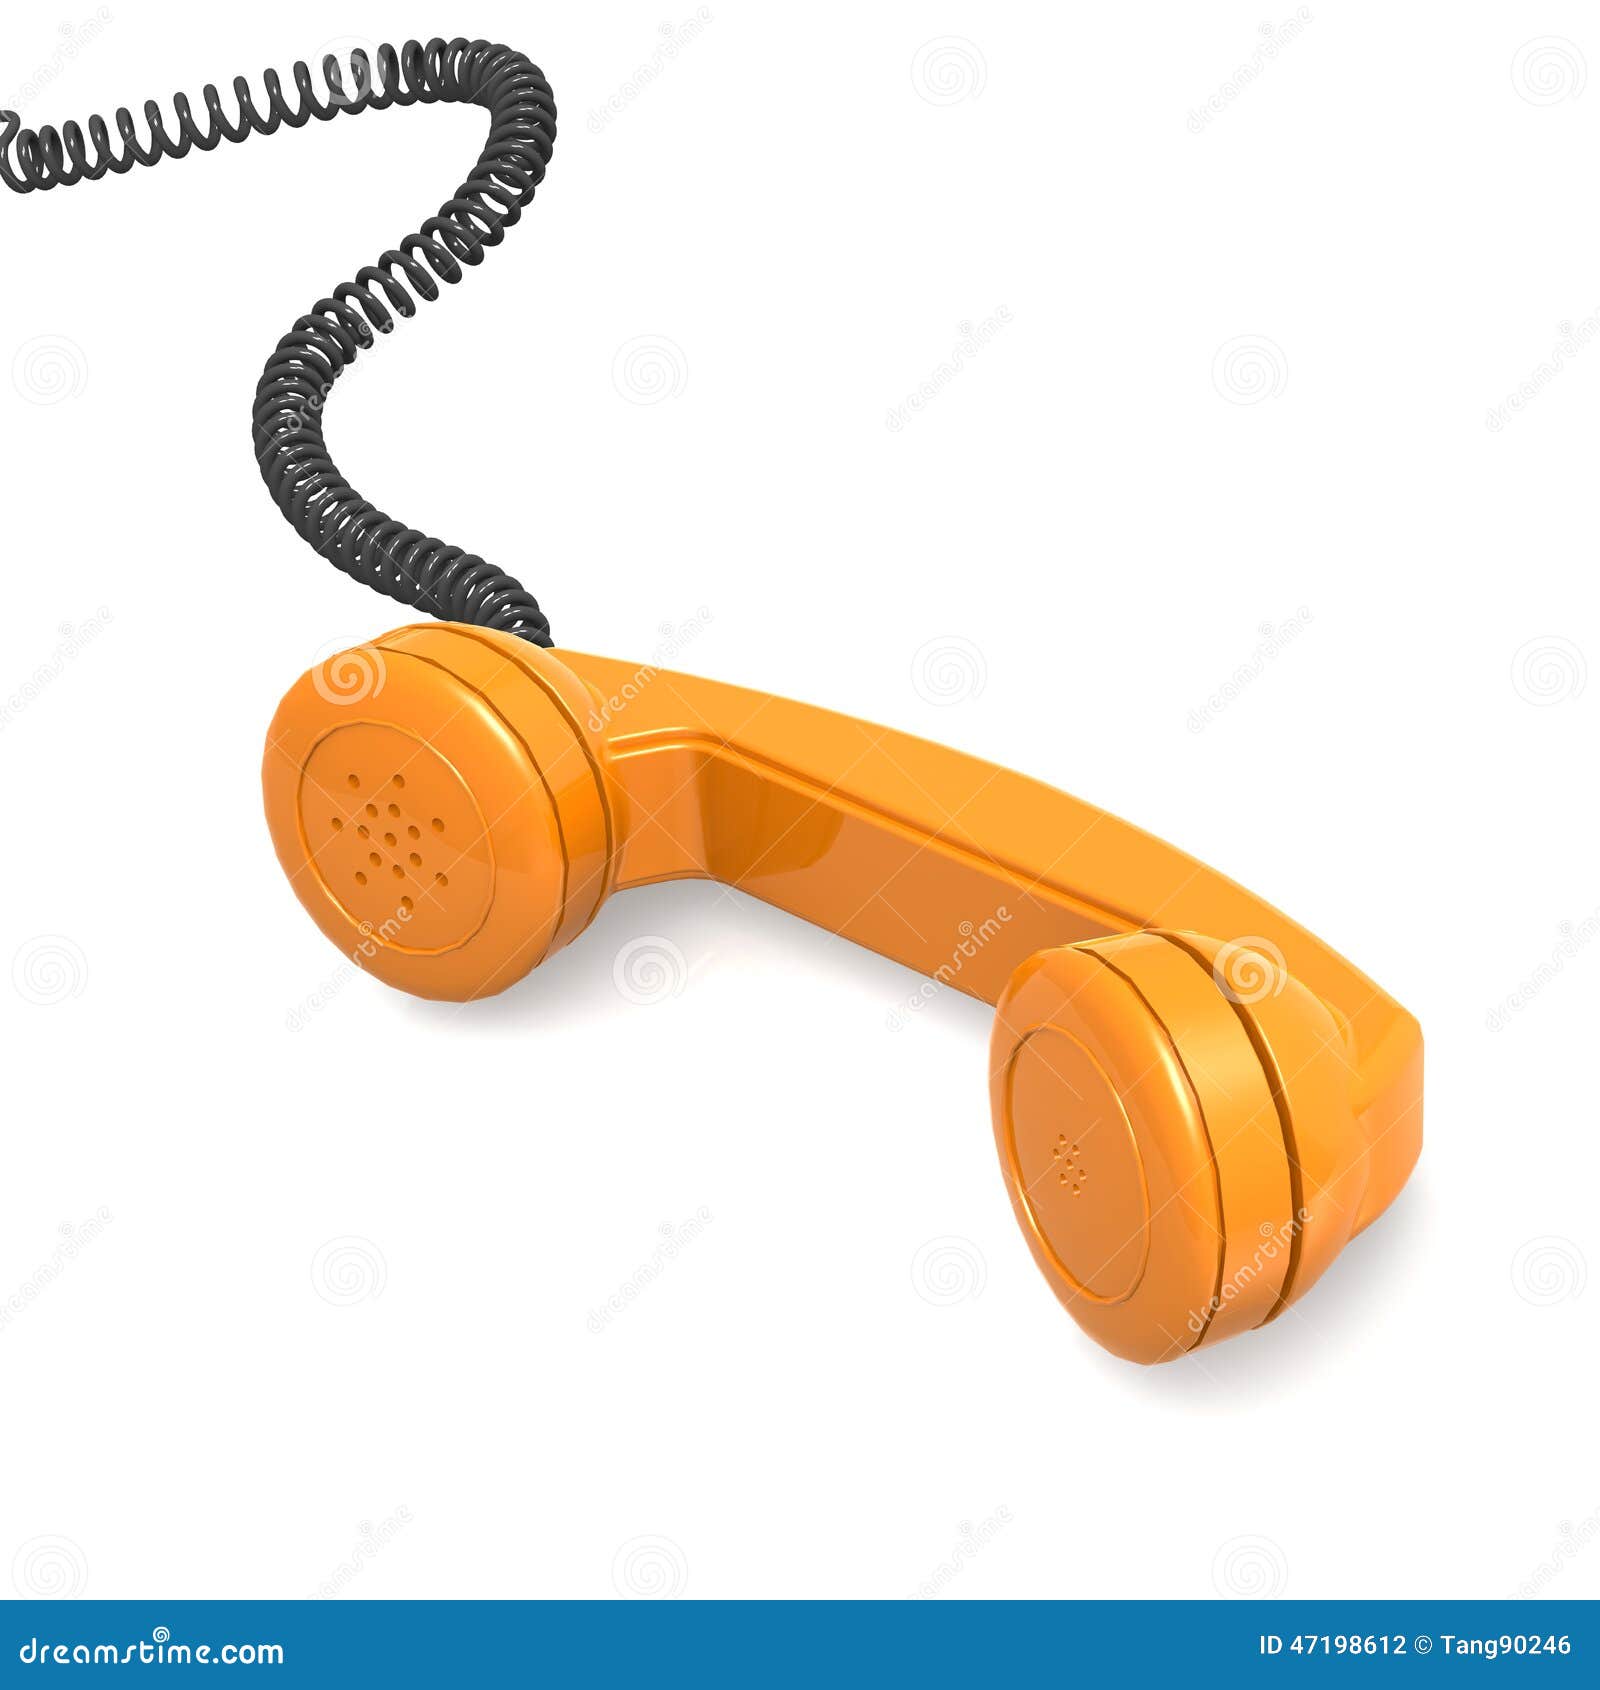 Receptor de teléfono anaranjado. La imagen anaranjada del receptor de teléfono con alquileres rindió las ilustraciones que se podrían utilizar para cualquier diseño gráfico